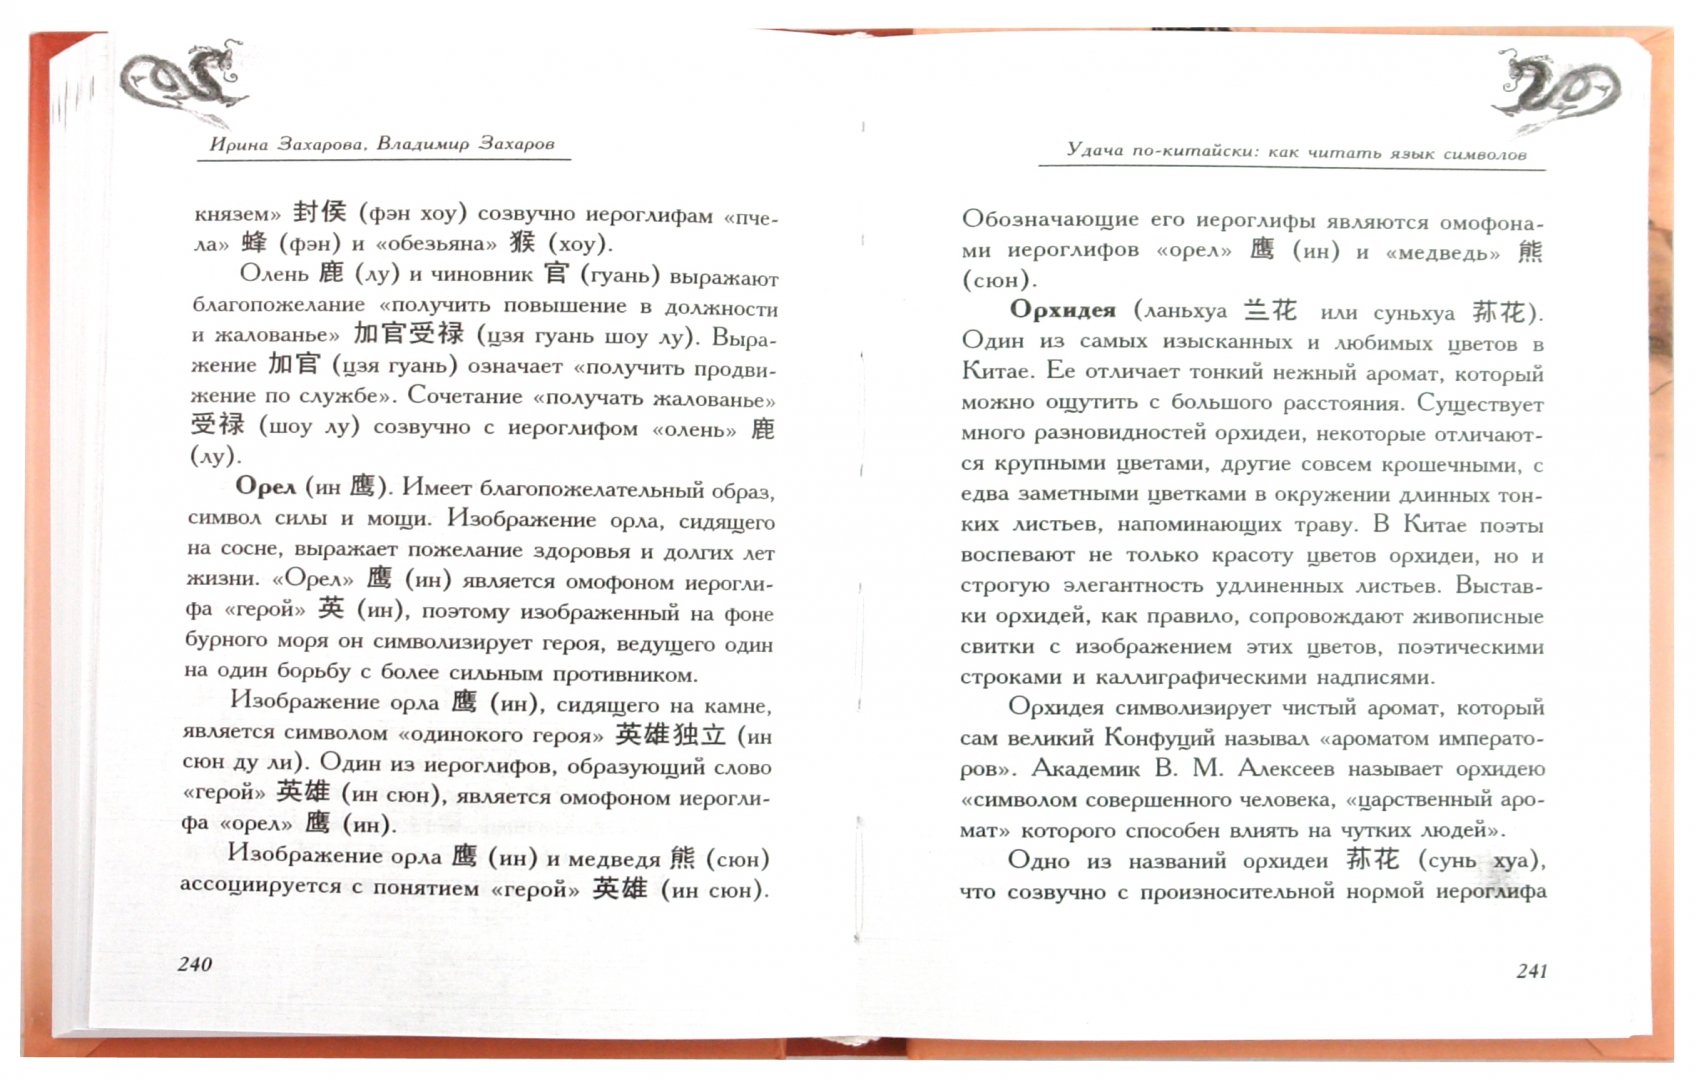 Иллюстрация 1 из 17 для Удача по-китайски: как читать язык символов - Захаров, Захарова | Лабиринт - книги. Источник: Лабиринт